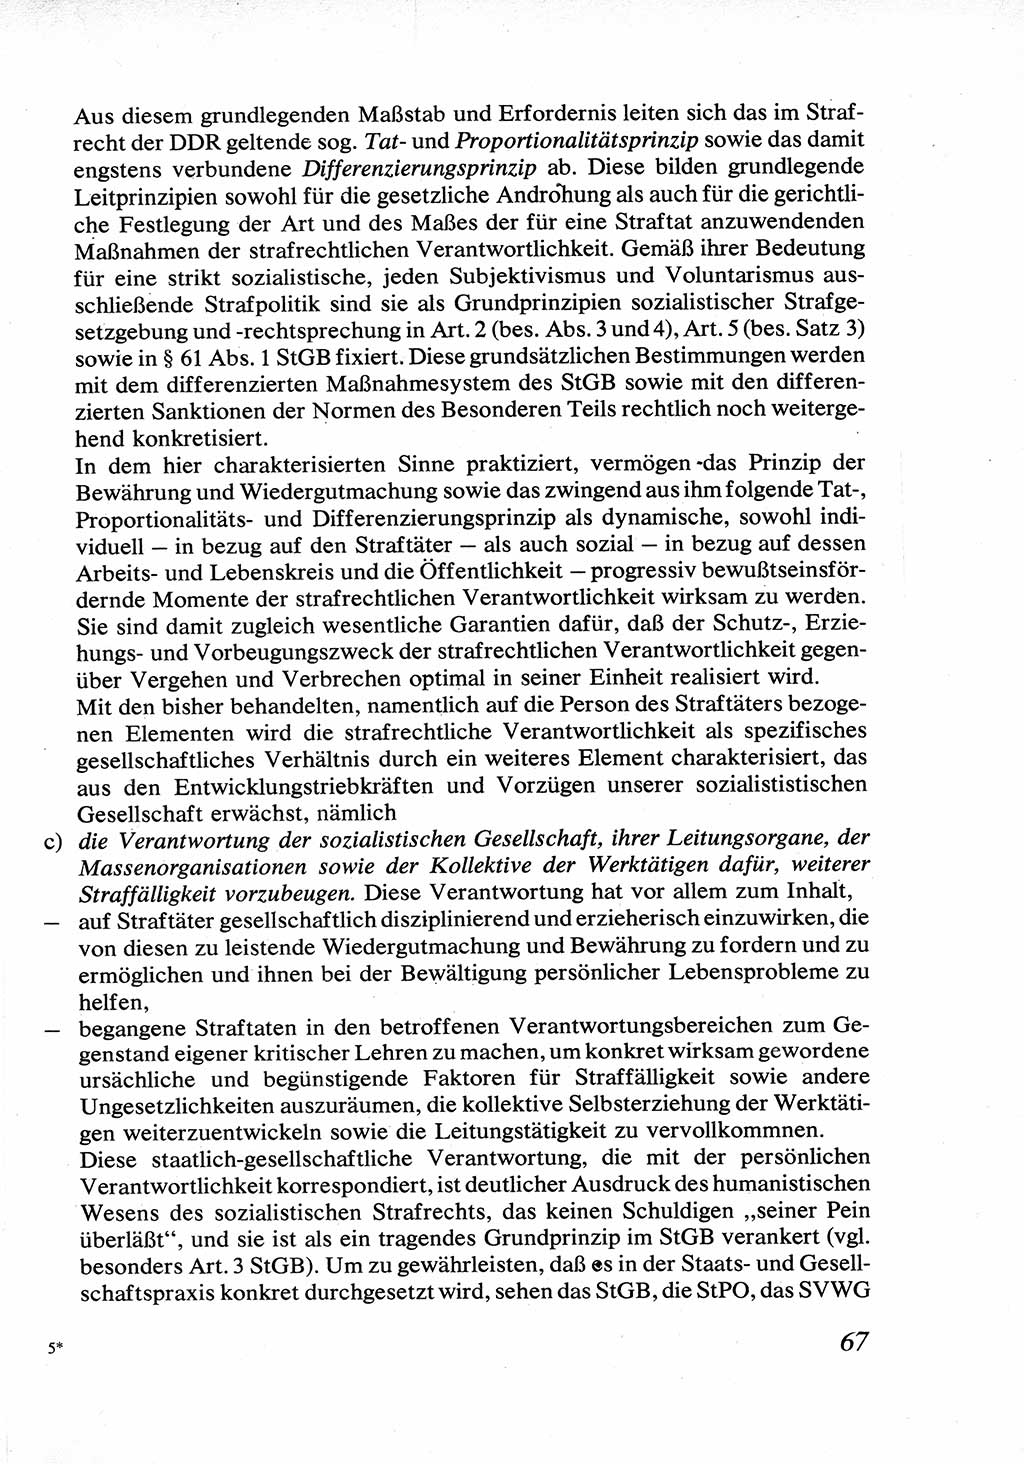 Strafrecht [Deutsche Demokratische Republik (DDR)], Allgemeiner Teil, Lehrbuch 1976, Seite 67 (Strafr. DDR AT Lb. 1976, S. 67)